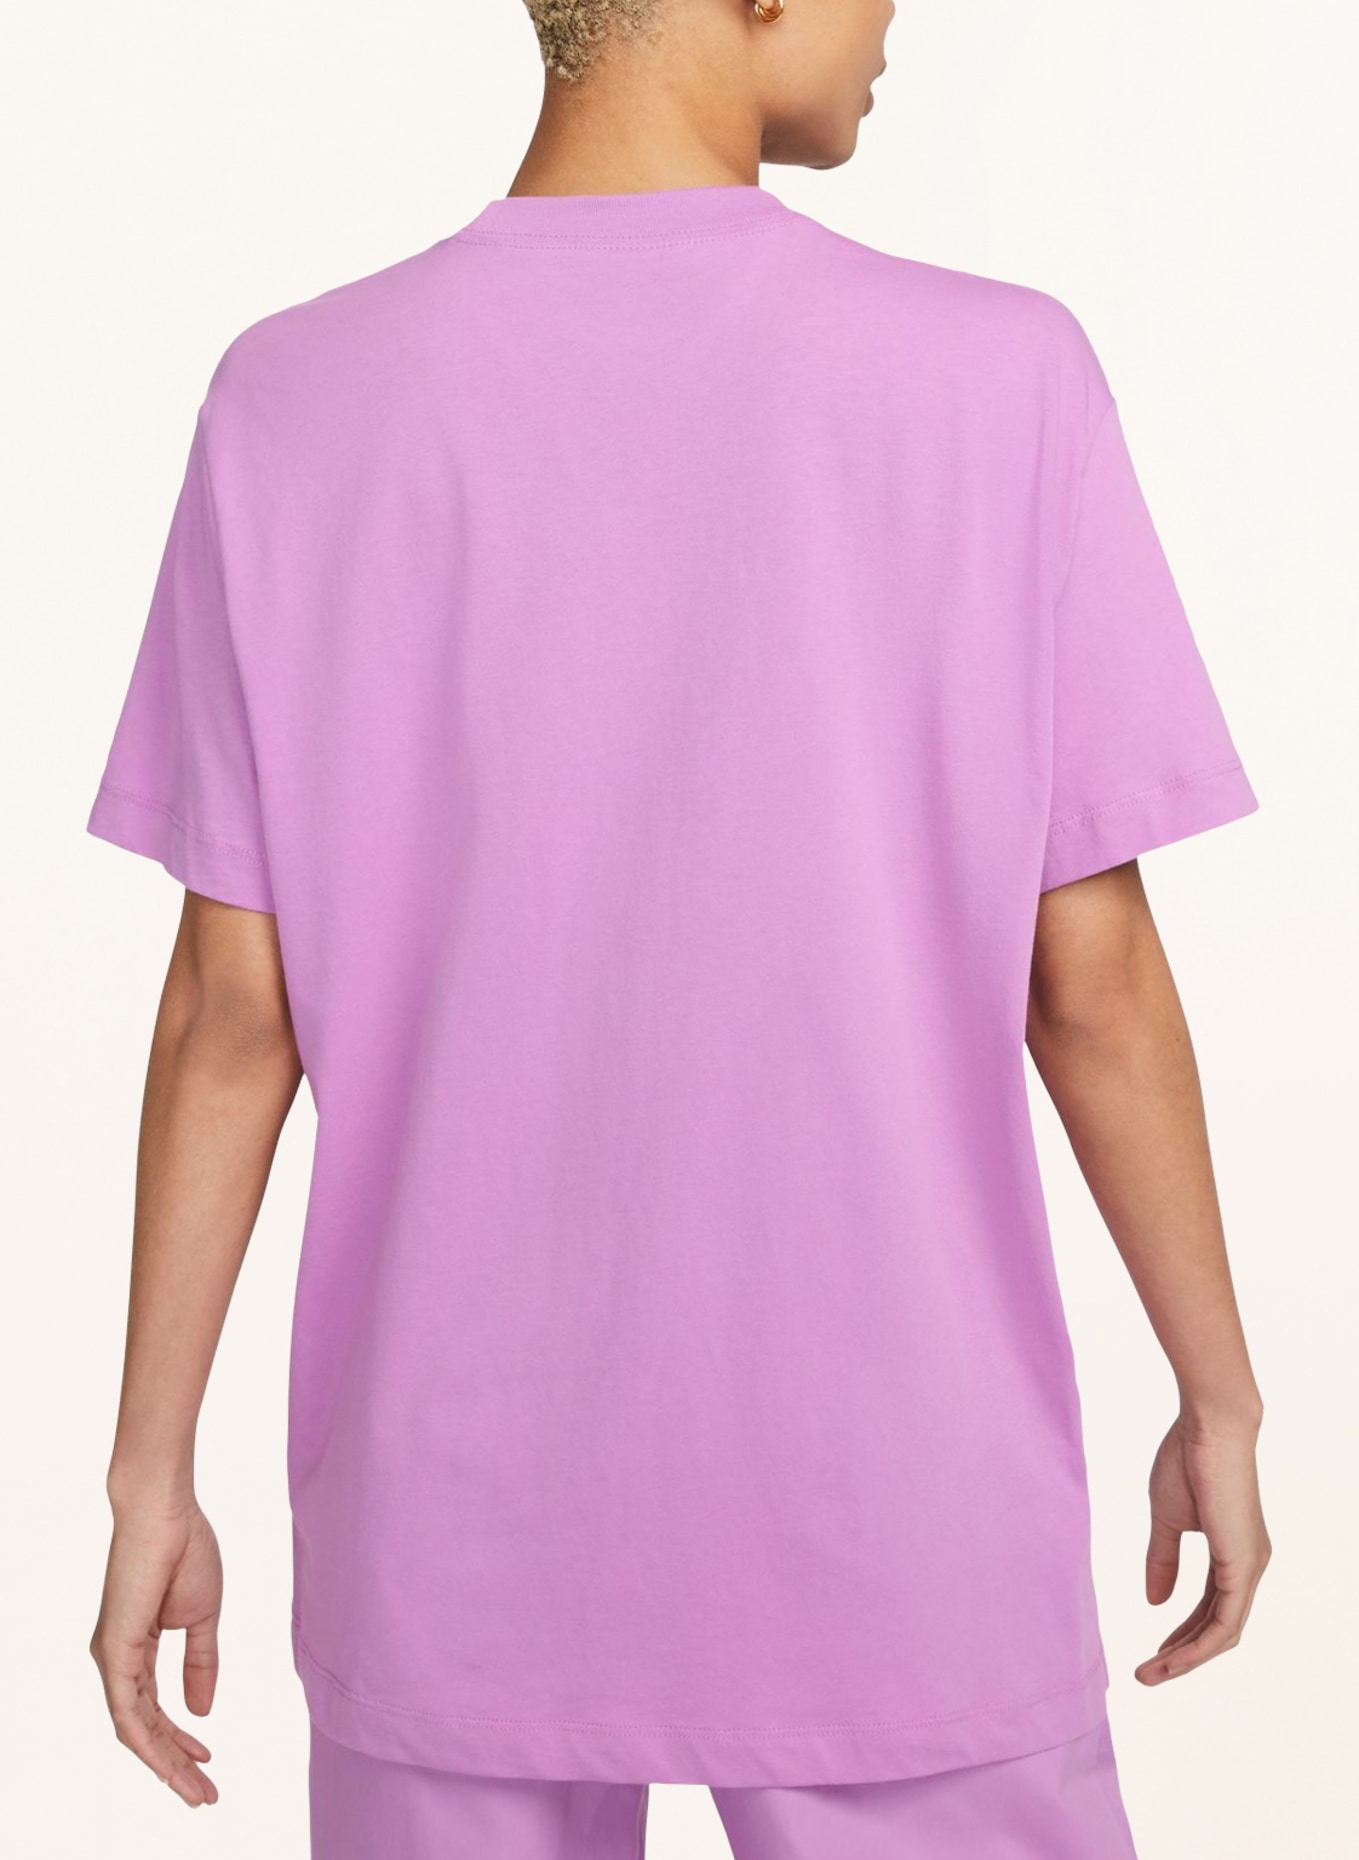 Nike T-shirt, Color: LIGHT PURPLE (Image 3)